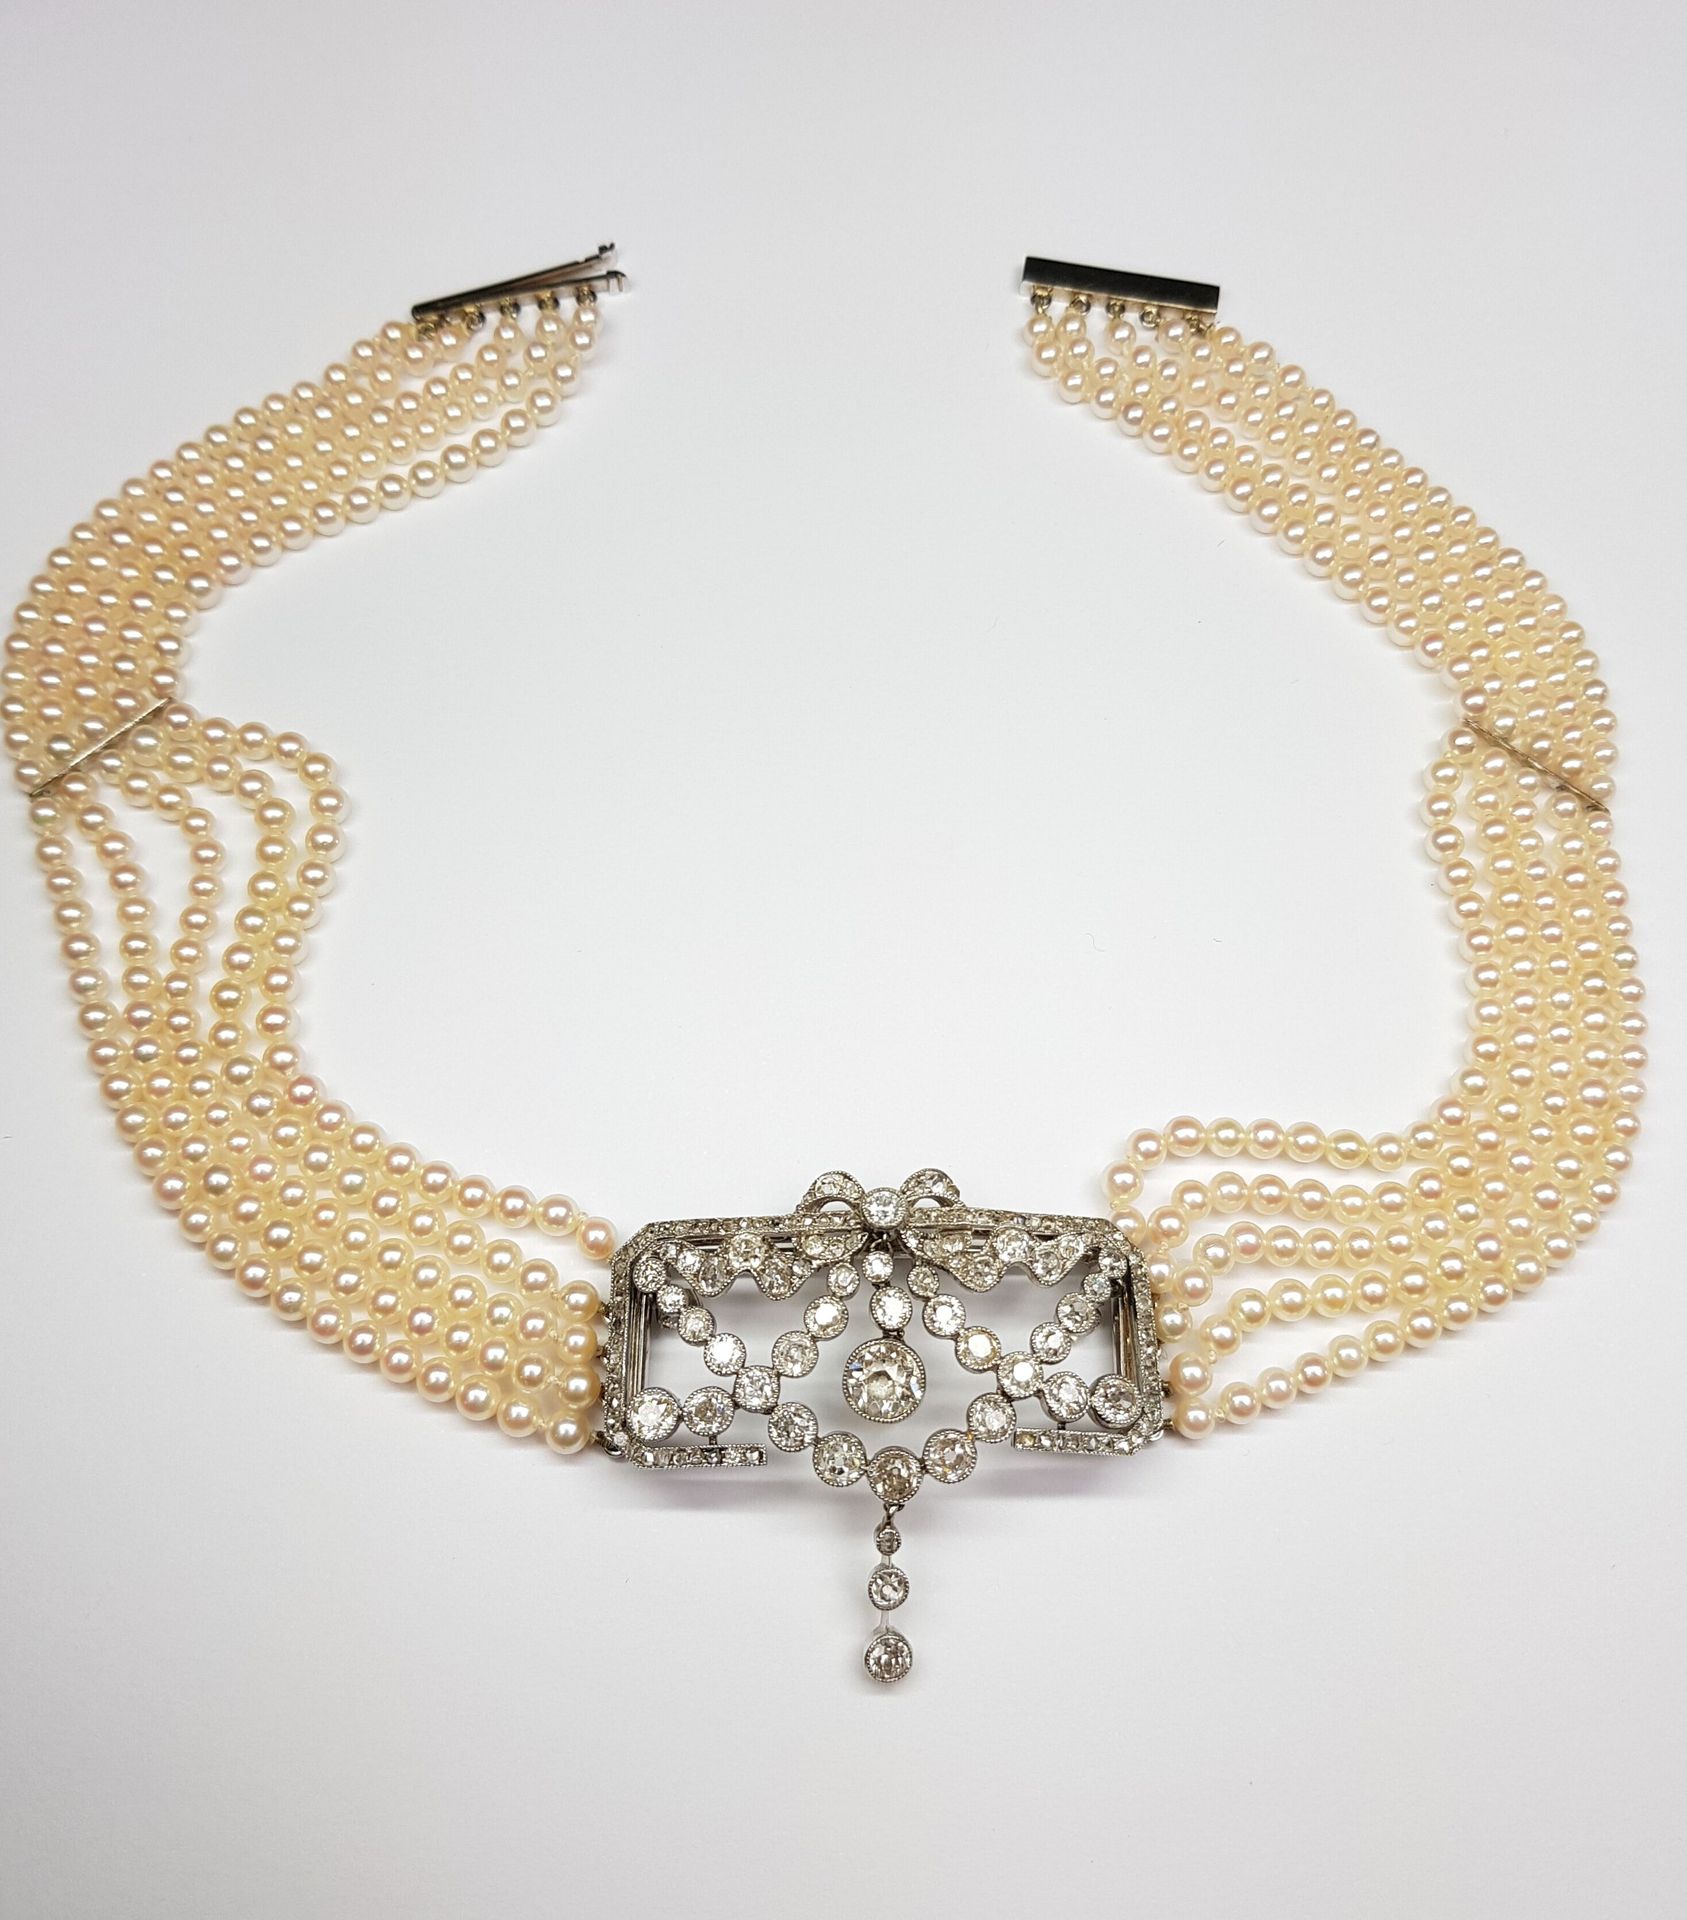 Null 一条五排养殖珍珠项链，长3-3.5厘米，以长方形的950‰铂金盘为中心，在585‰白金上镶嵌花环，顶部有一个蝴蝶结，全部镶嵌钻石，包括老式切割和玫瑰式&hellip;